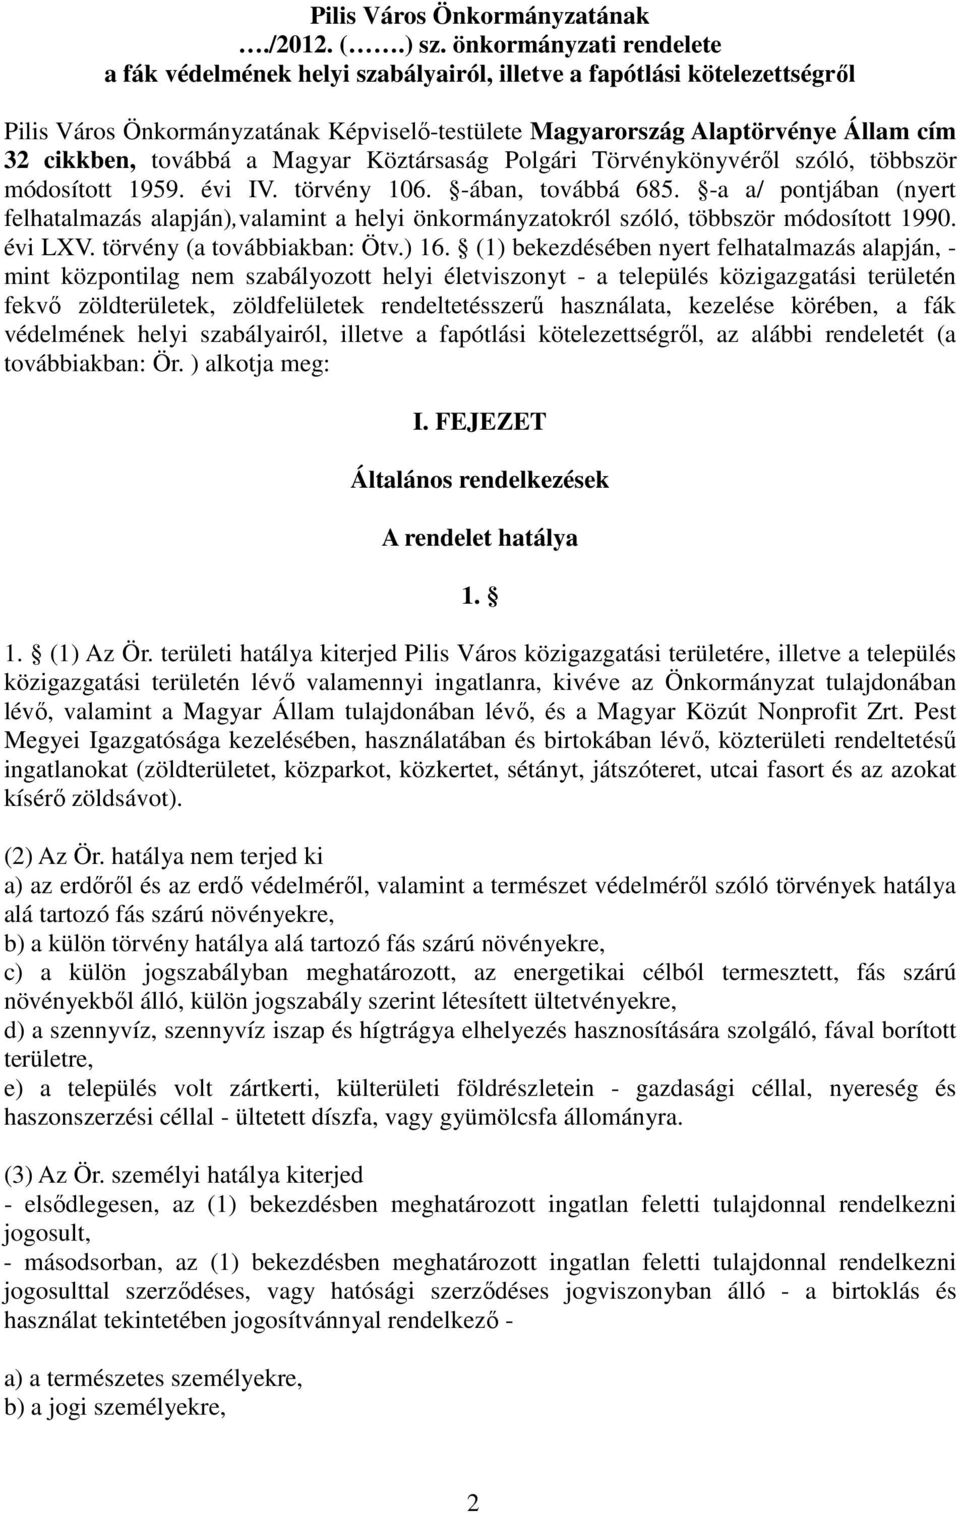 továbbá a Magyar Köztársaság Polgári Törvénykönyvérıl szóló, többször módosított 1959. évi IV. törvény 106. -ában, továbbá 685.